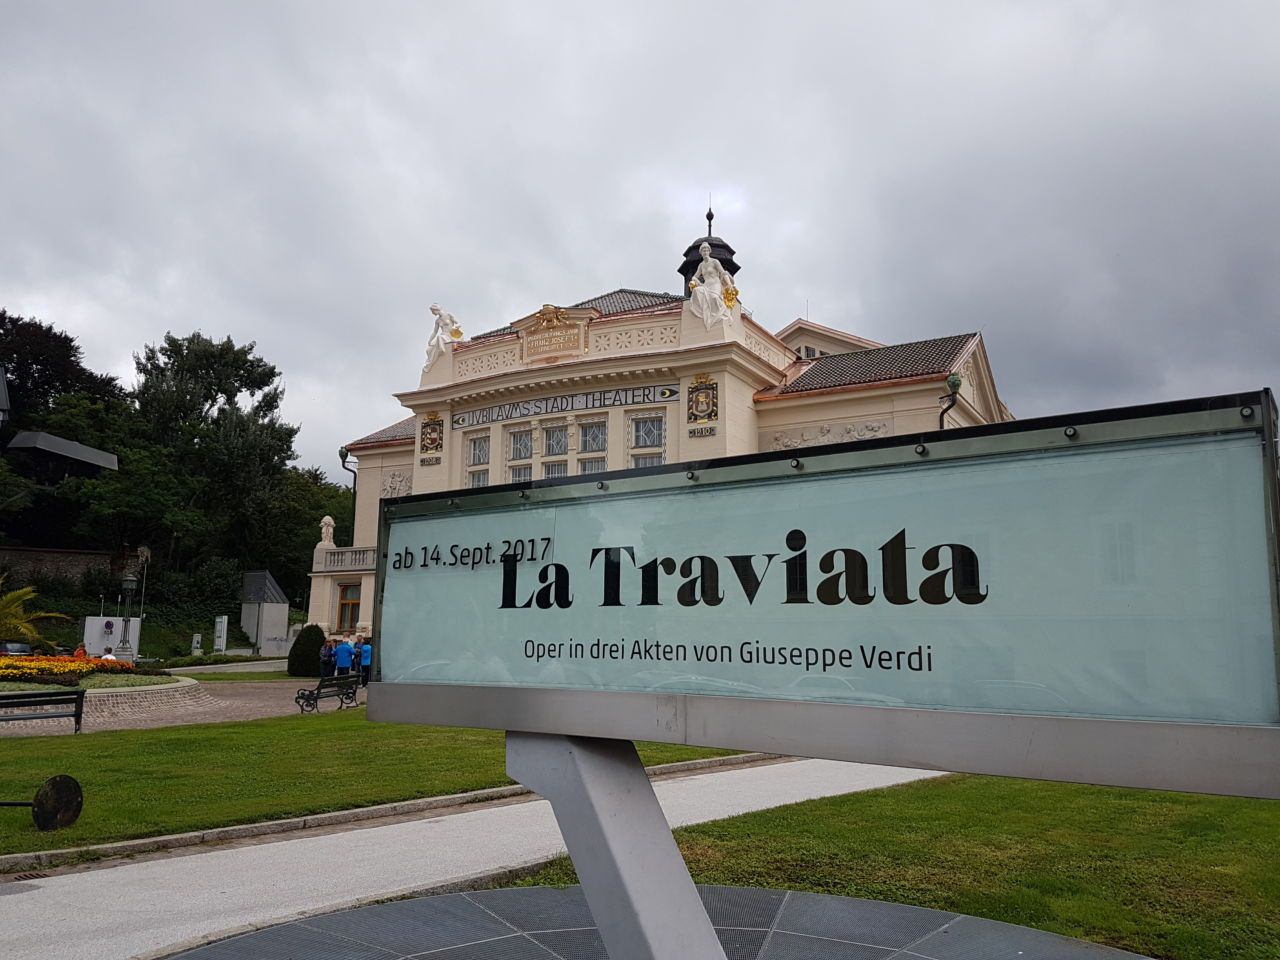 Am 3. September wird das neu renovierte Theater zur Matinee von La Traviata das erste Mal Besuchern geöffnet.